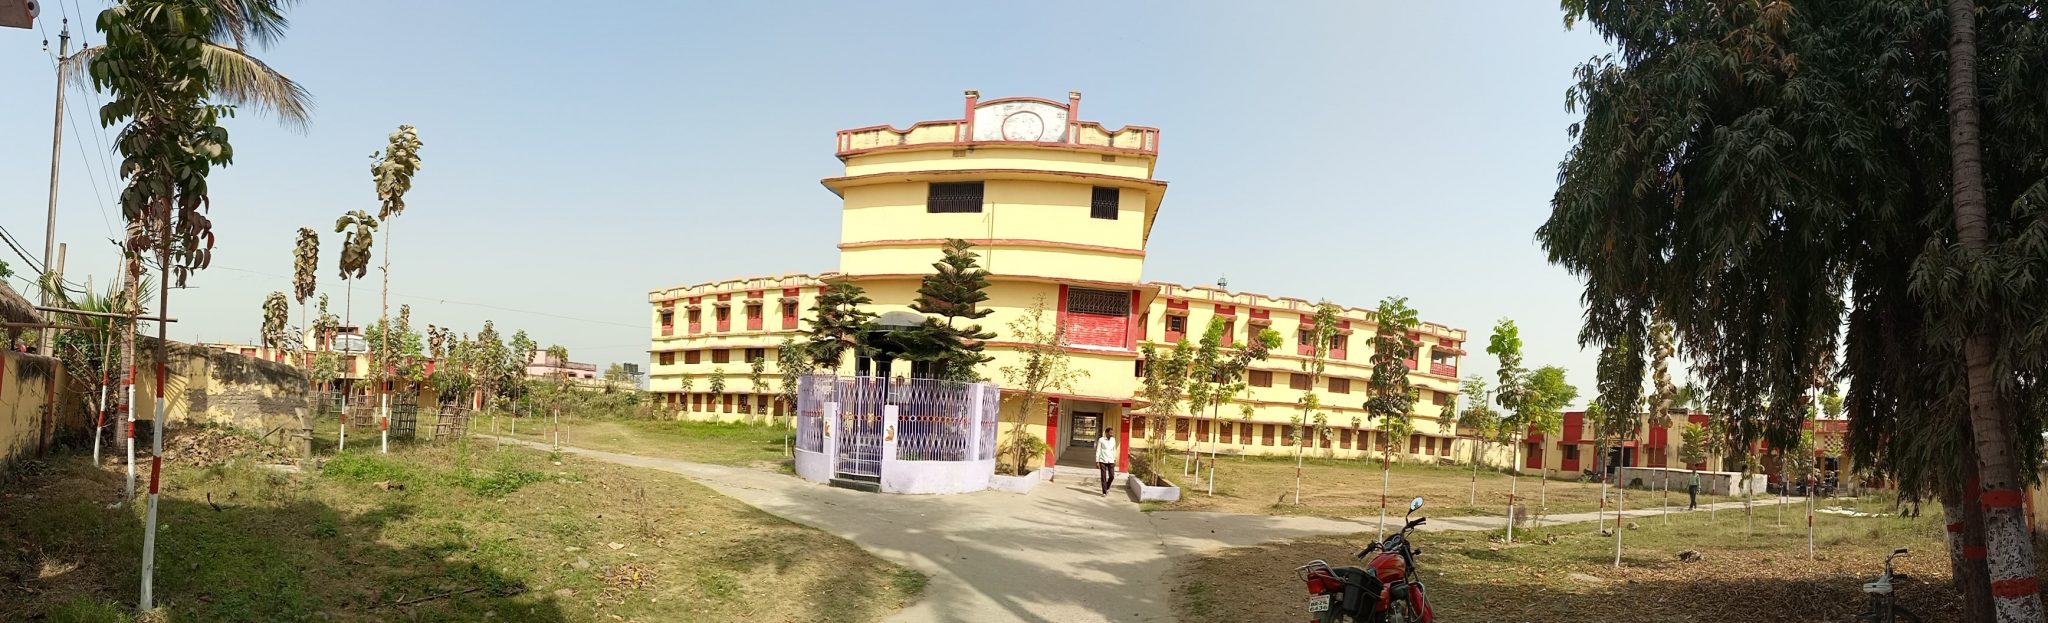 Chandrashekhar Nasib Banke College, Sheikhpura Image